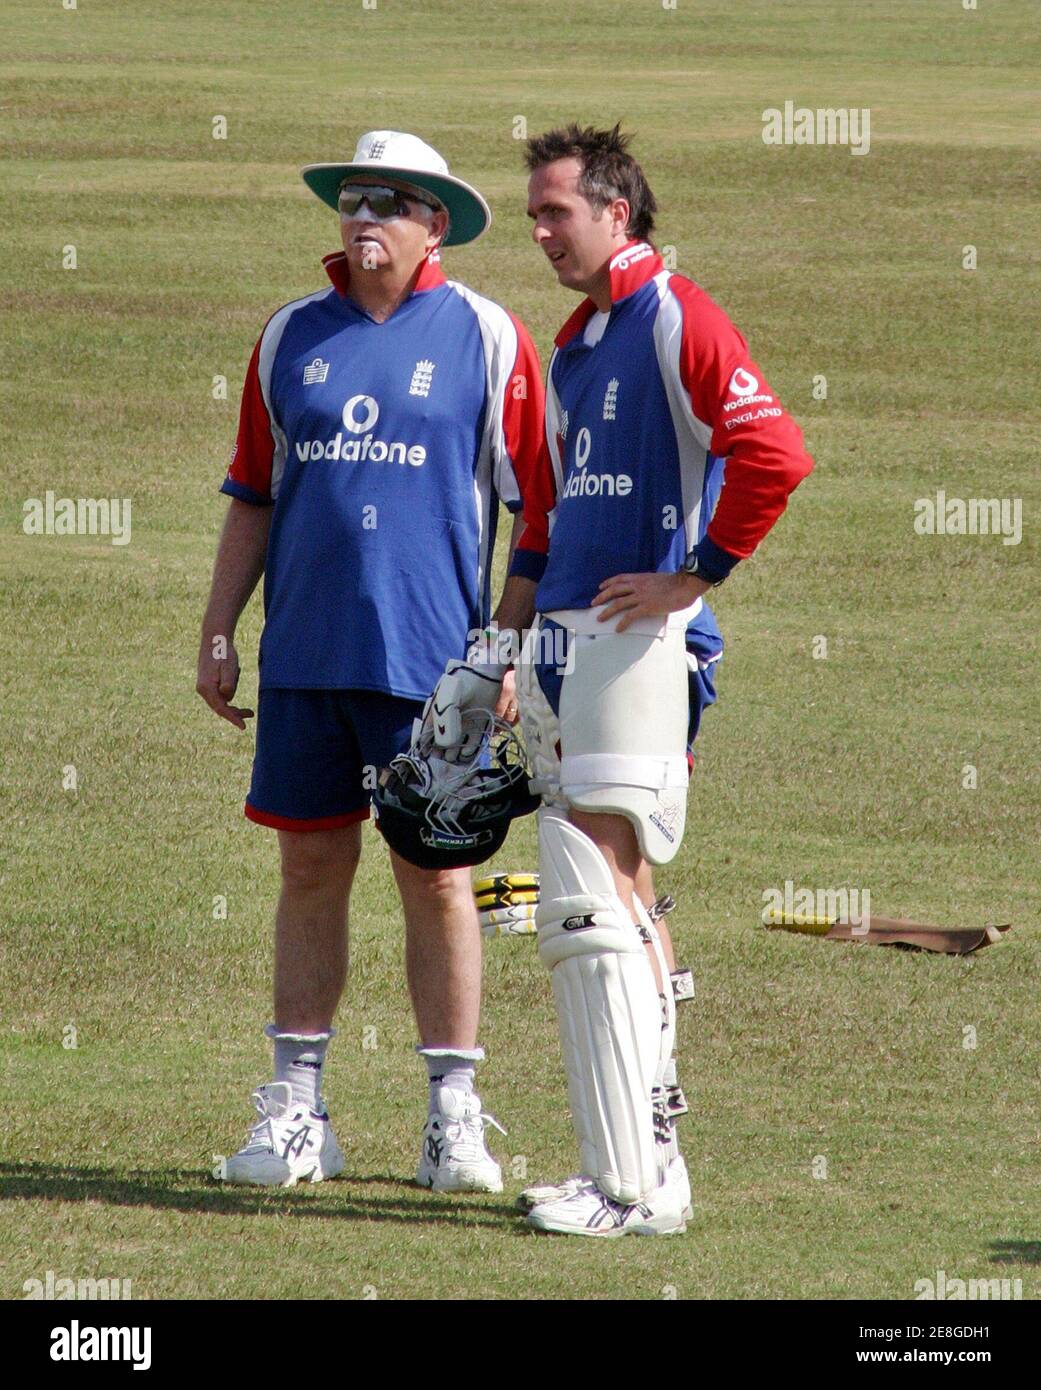 England Kapitän Michael Vaughan (R) spricht mit Trainer Duncan Fletcher während einer Trainingseinheit in Rawalpindi 28. Oktober 2005. England spielt drei Tests und fünf eintägige Internationals in Pakistan. Der erste Test beginnt am 12. November in Multan. REUTERS/Faisal Mahmood Stockfoto